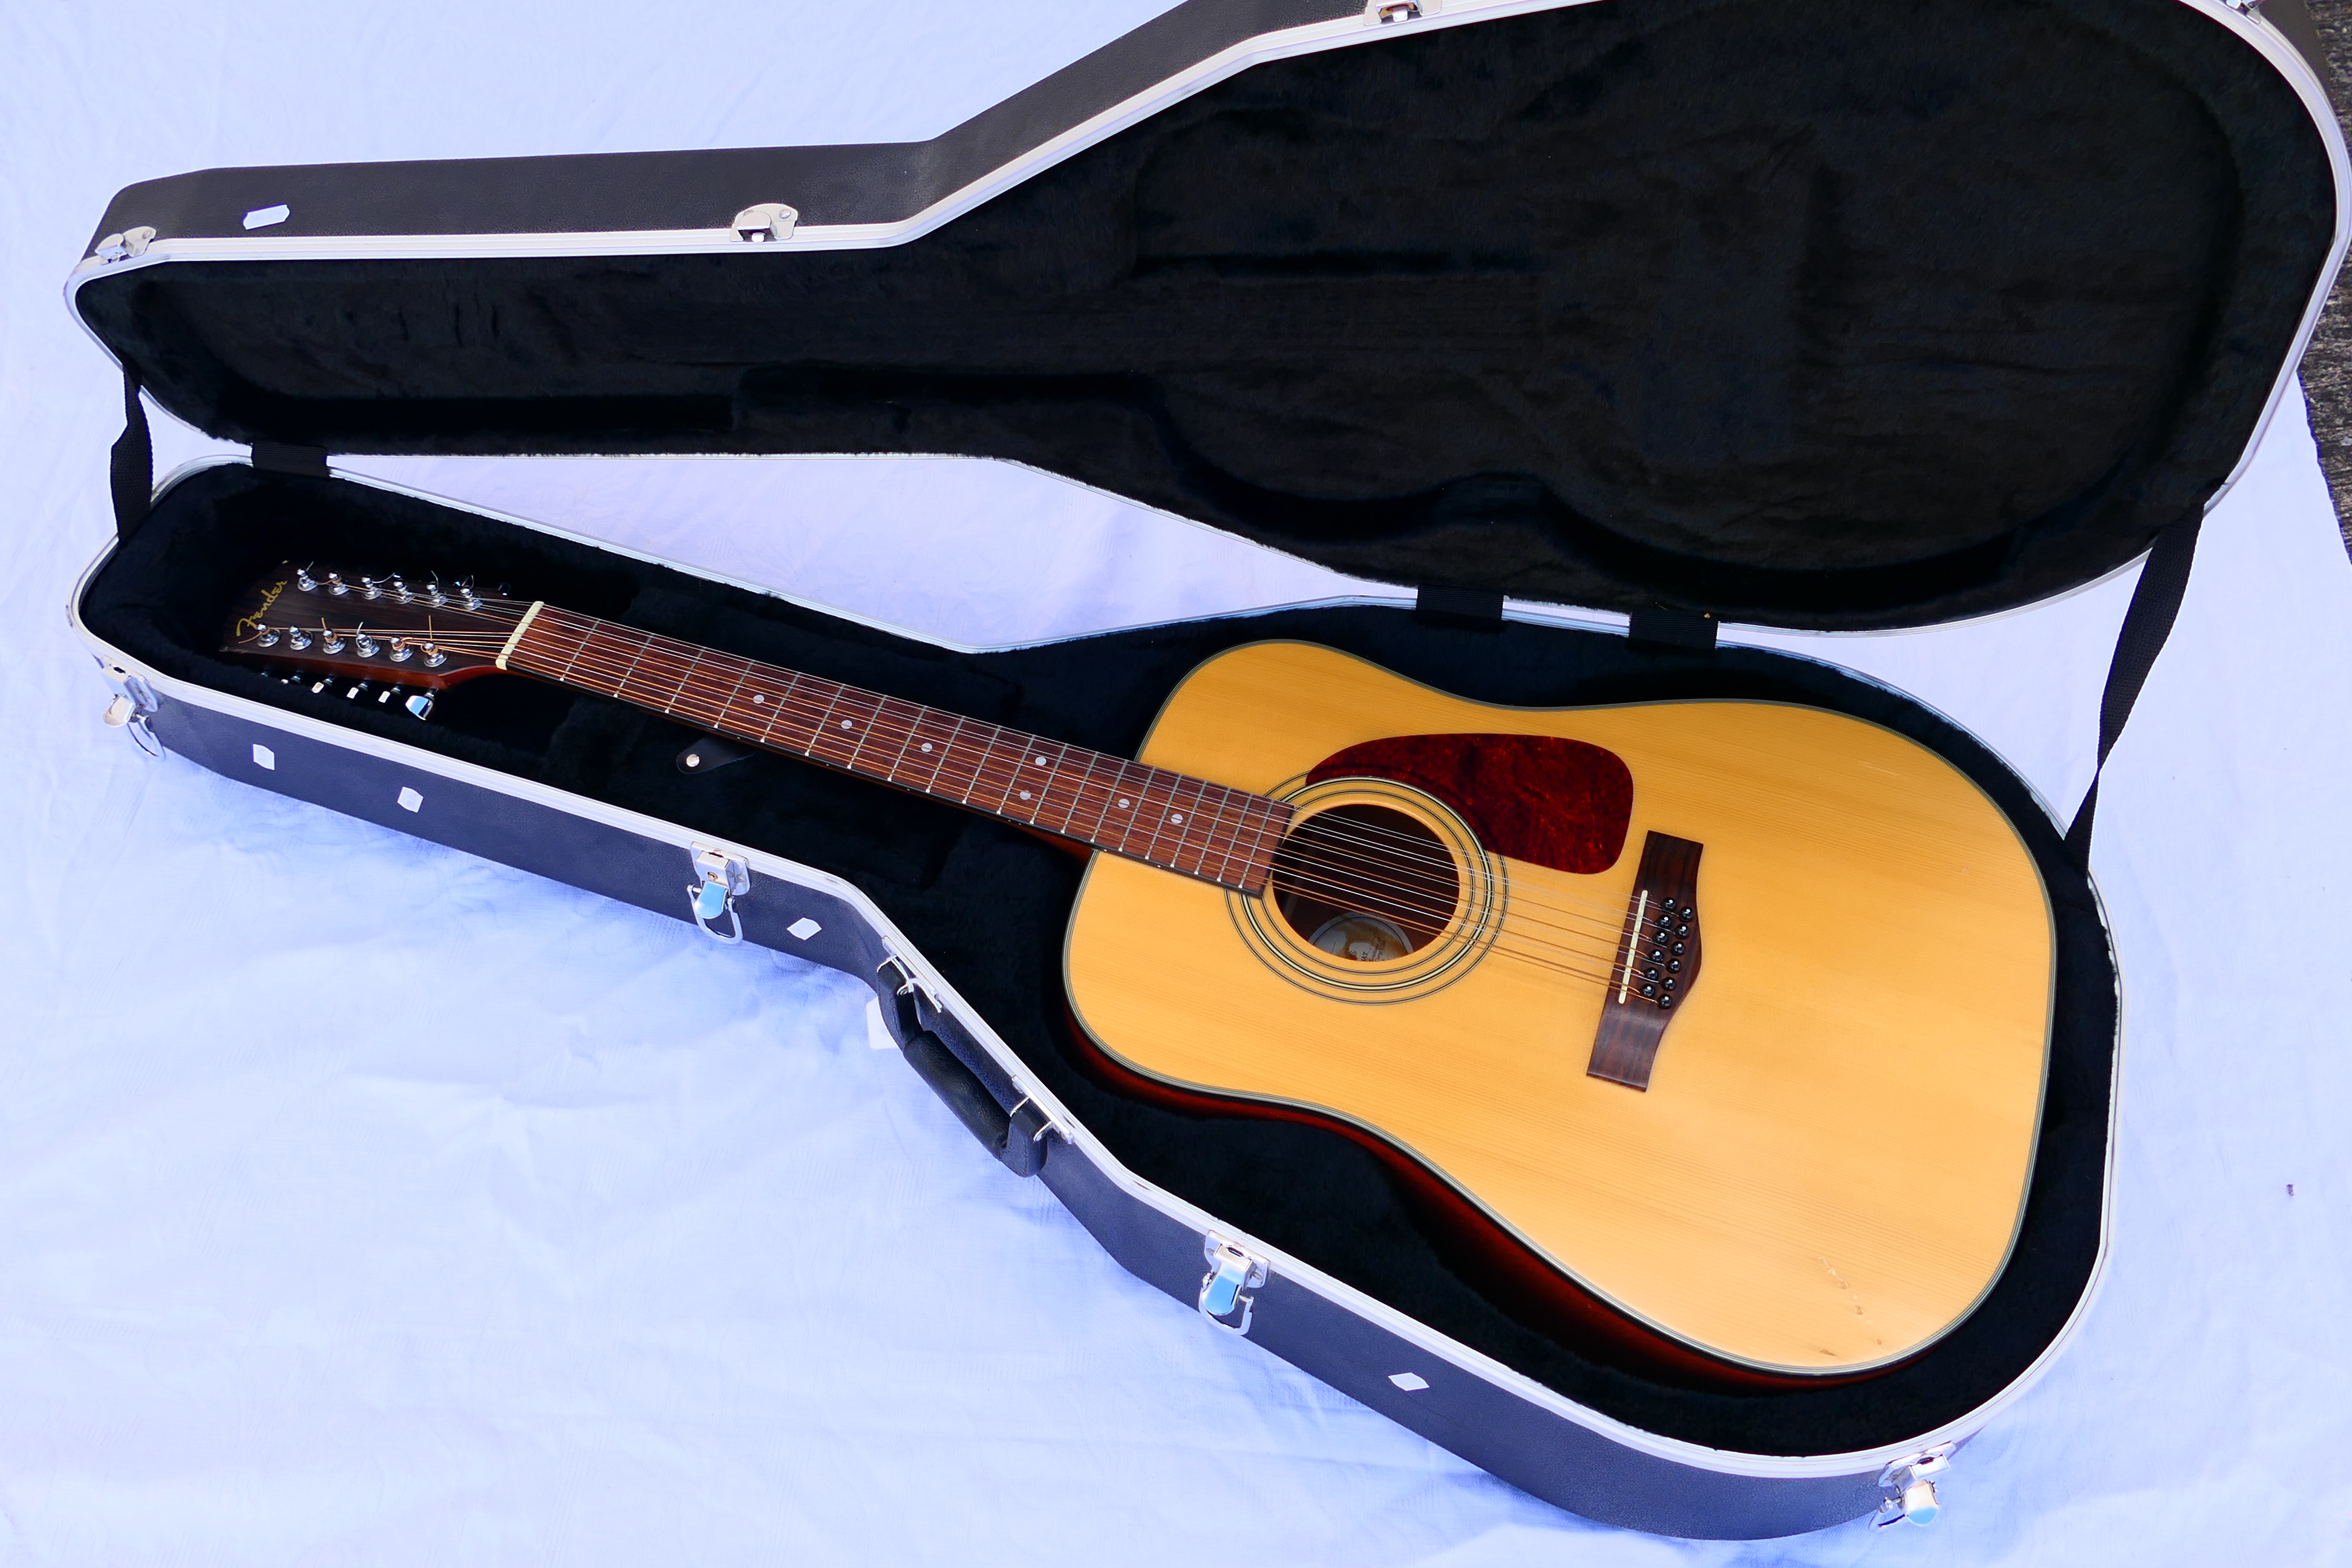 A Fender twelve string acoustic guitar, model DG-14S NAT, serial number 2016***,